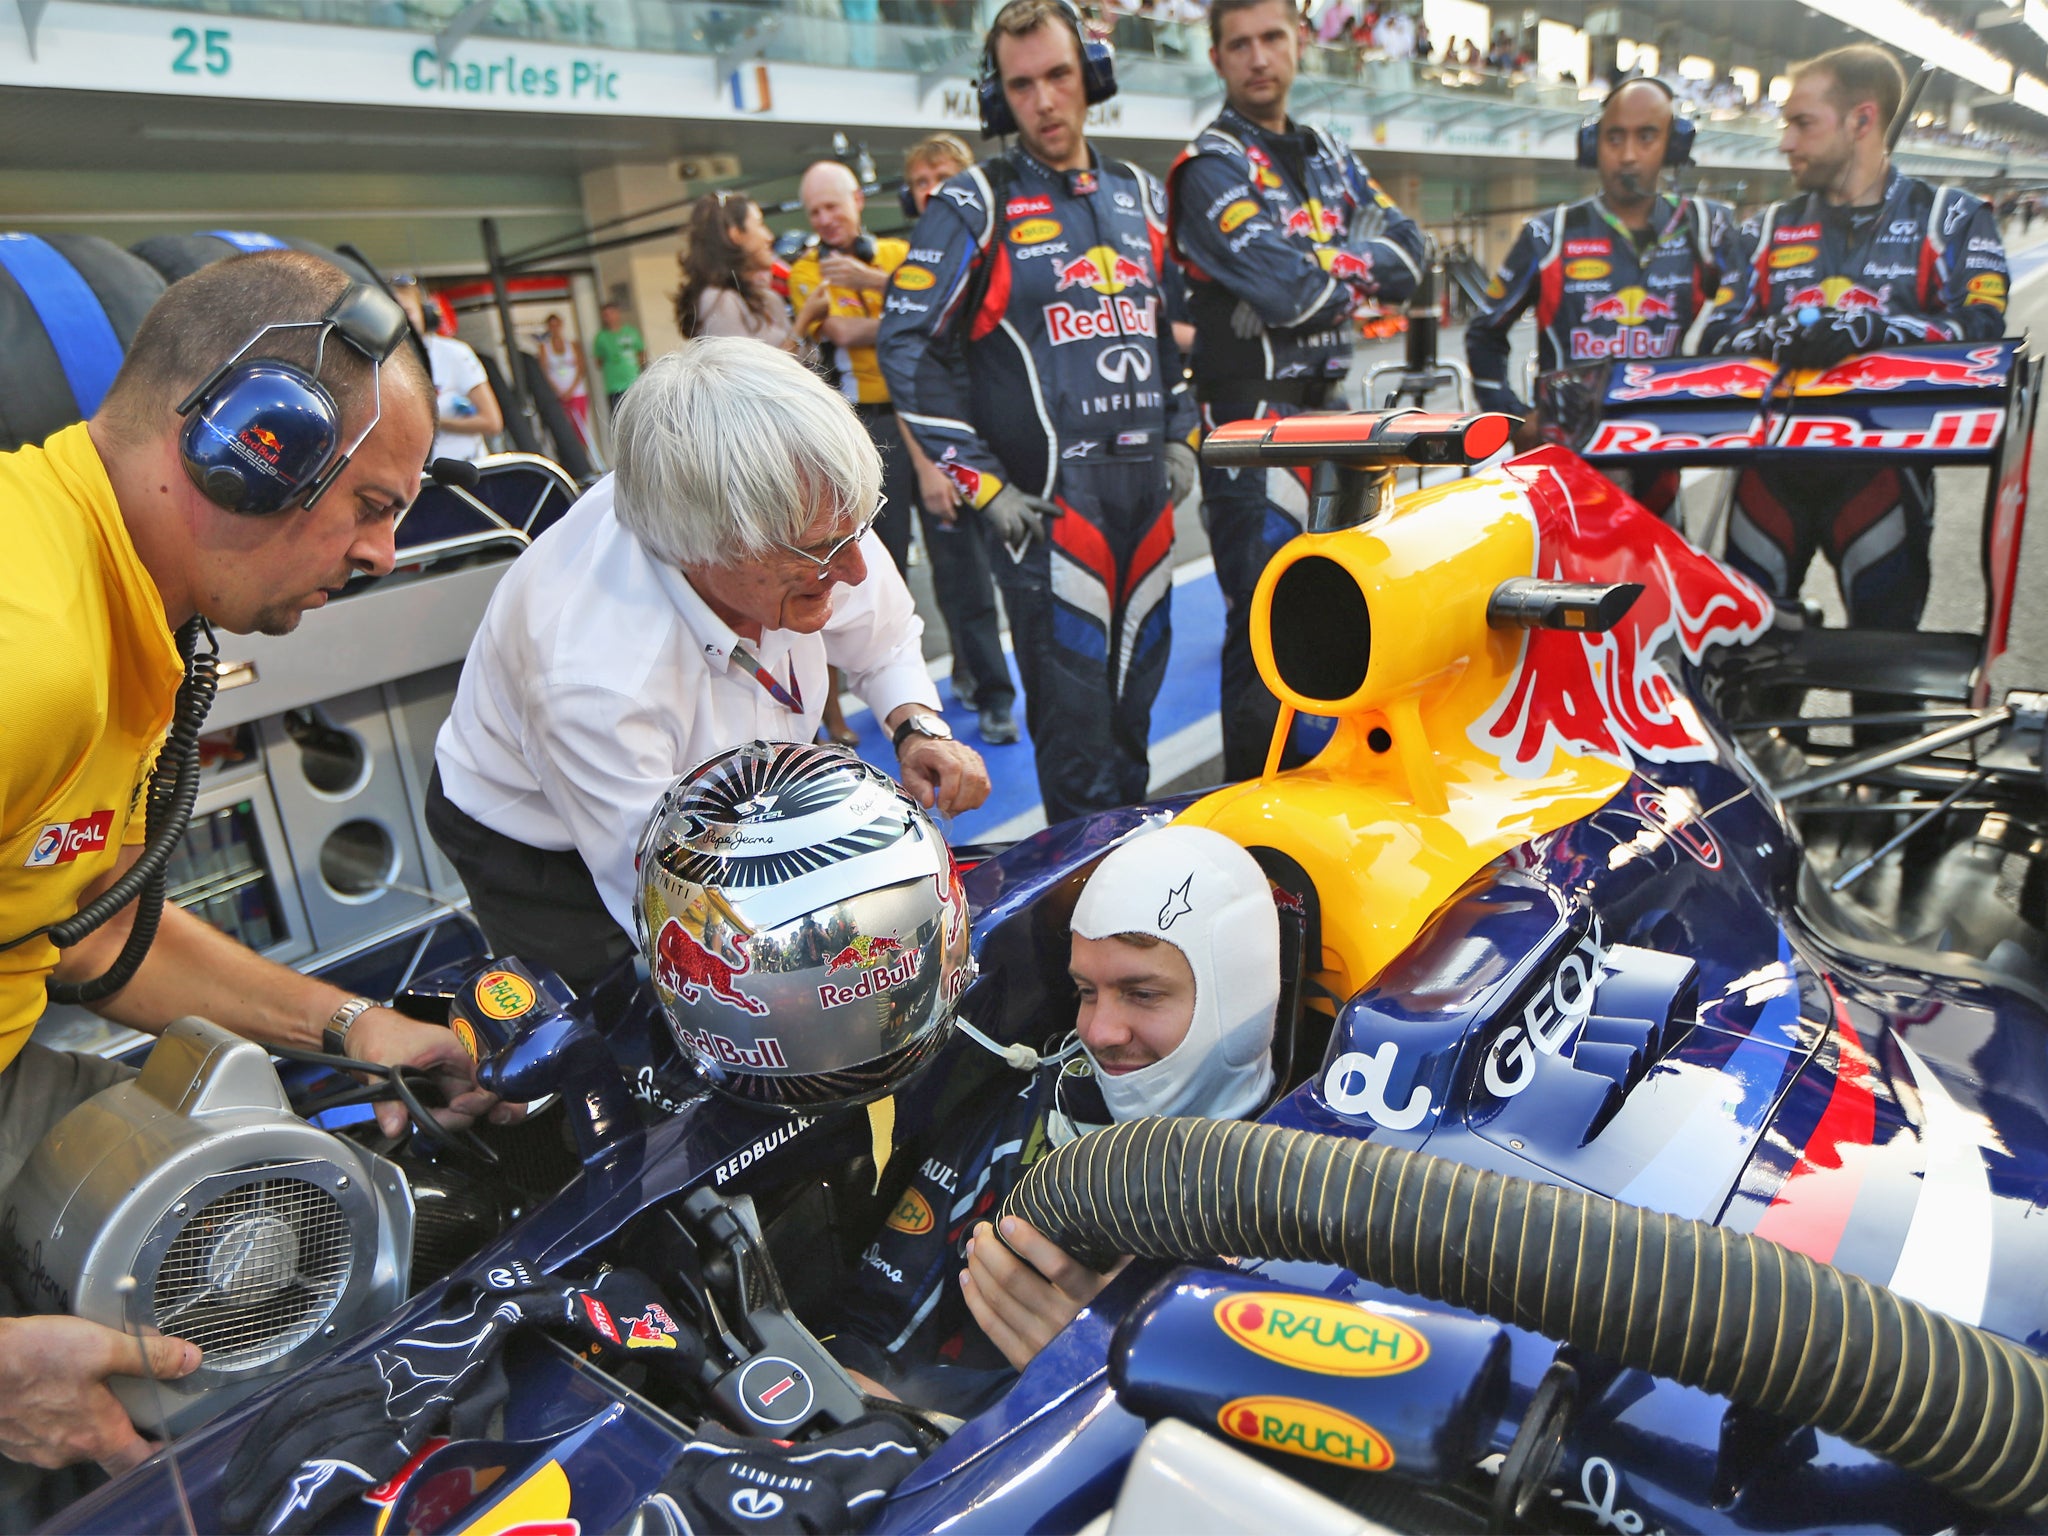 F1 supremo Bernie Ecclestone with driver Sebastian Vettel